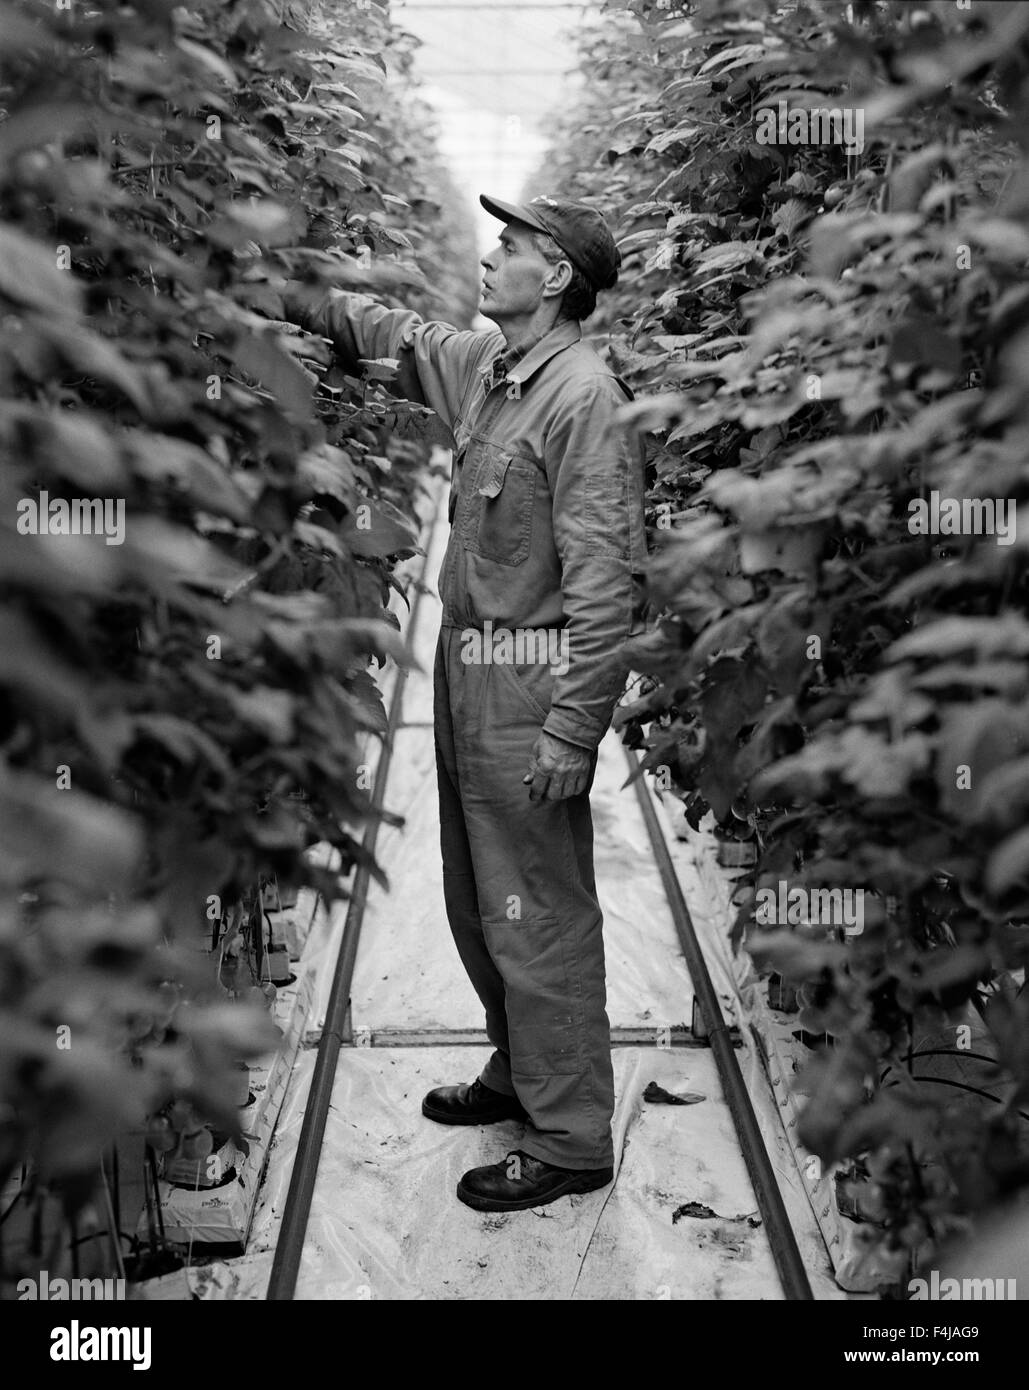 Un agriculteur l'inspection des végétaux Banque D'Images